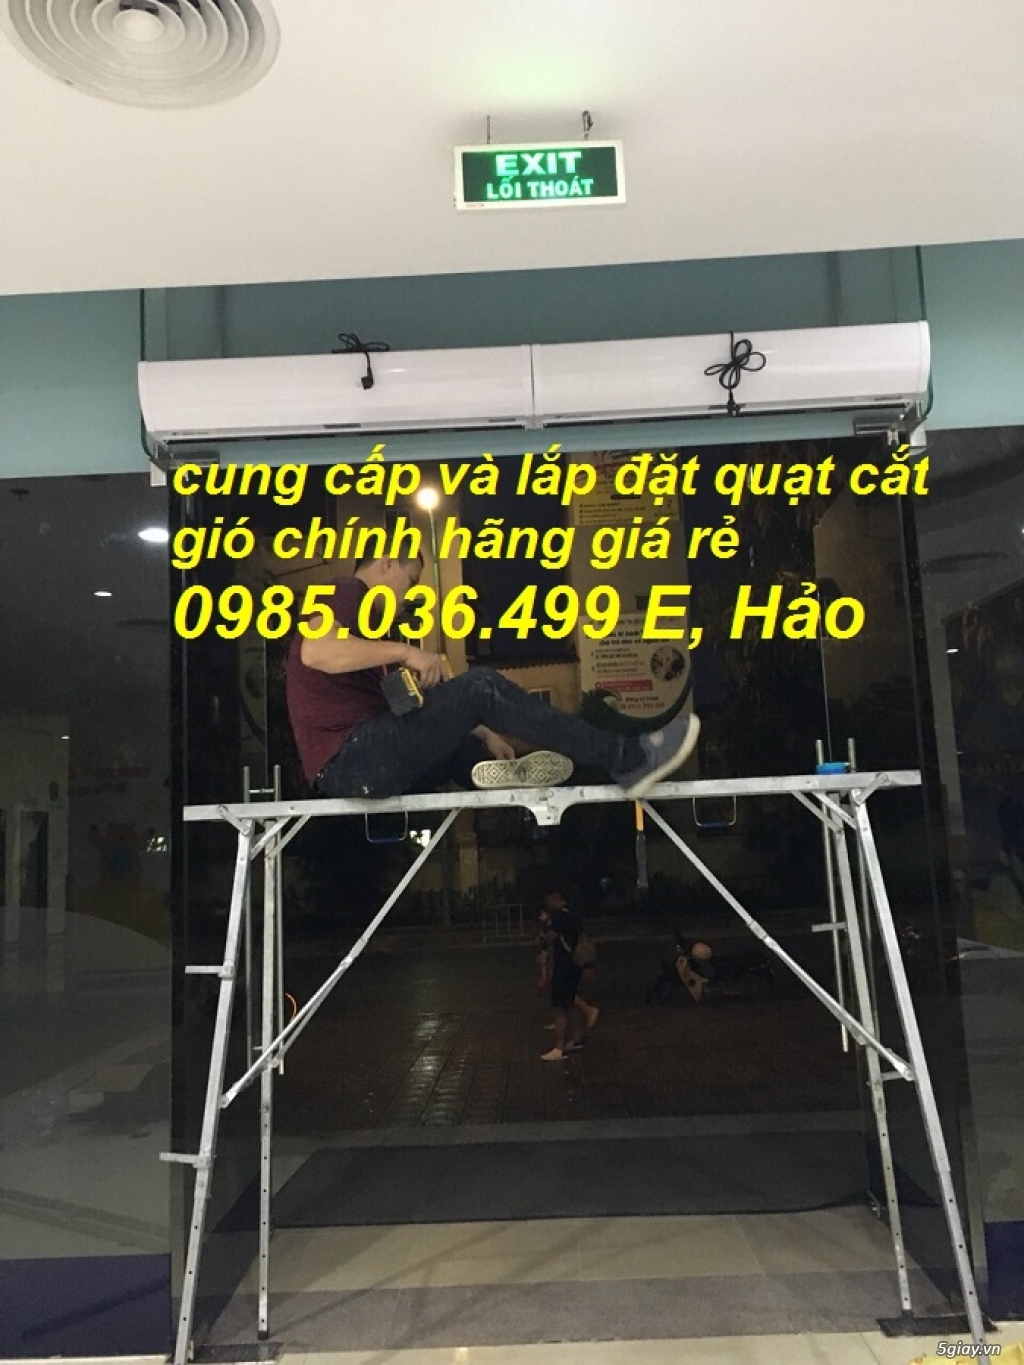 Cung cấp và lắp đặt quạt cắt gió 1,5m Nanyoo tại Hà Nội - 3